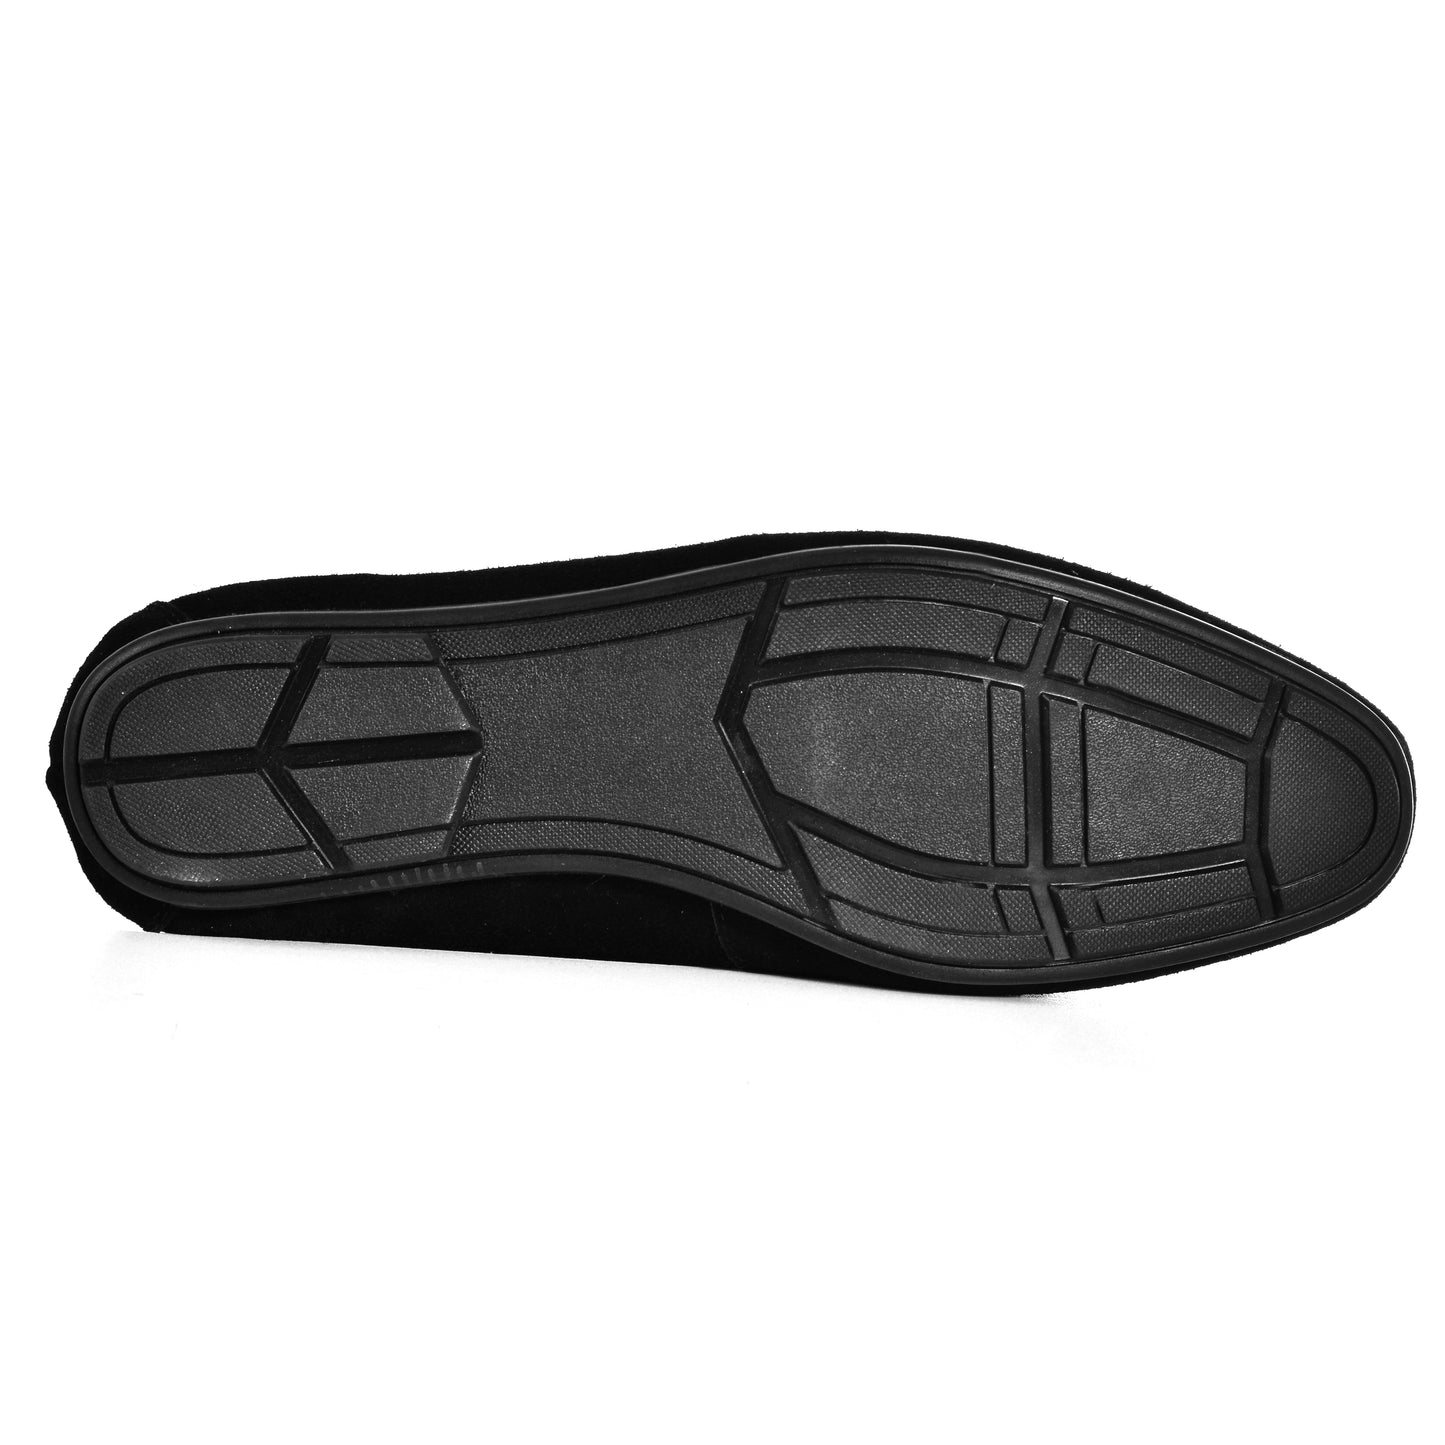 SALE! 2H #JX21-2 Black Loafer Moccasin